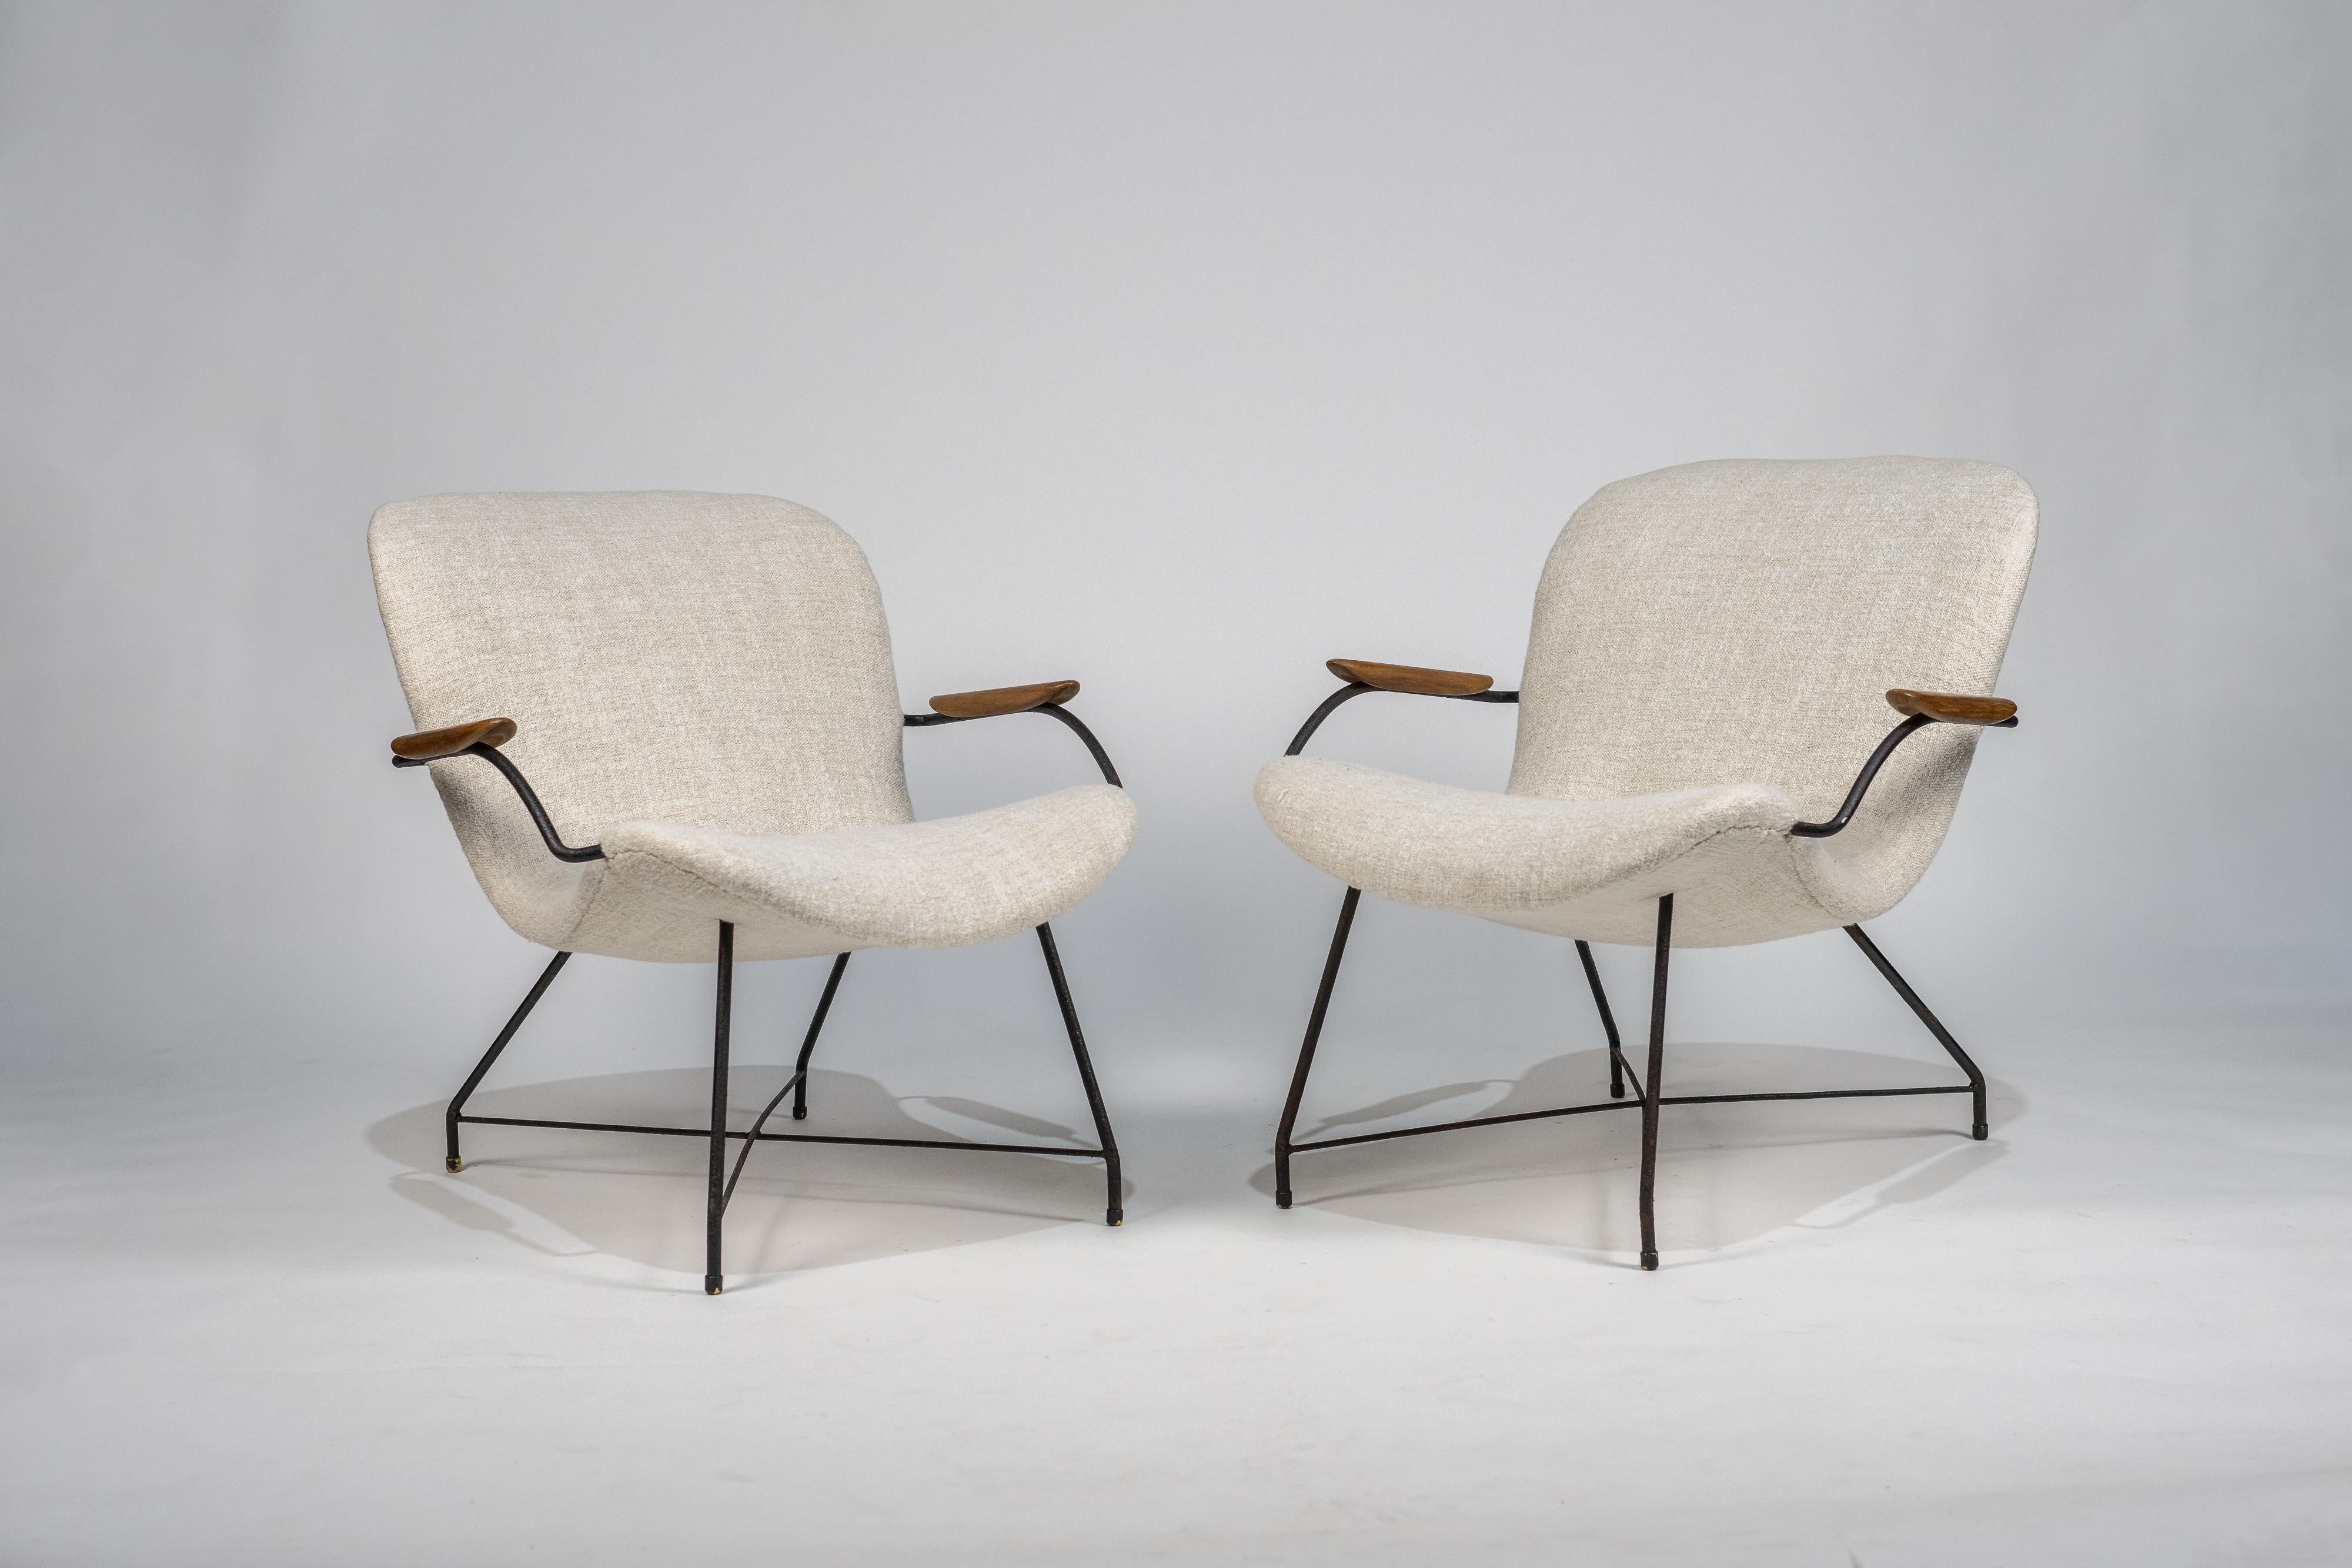 Este par de sillones, creados por el dúo de diseñadores Carlo Hauner y Martin Eisler, refleja el estilo característico del diseño brasileño de las décadas de 1950 y 1960. Las dimensiones de cada sillón son 73 x 68 x 41 cm, con una altura de asiento